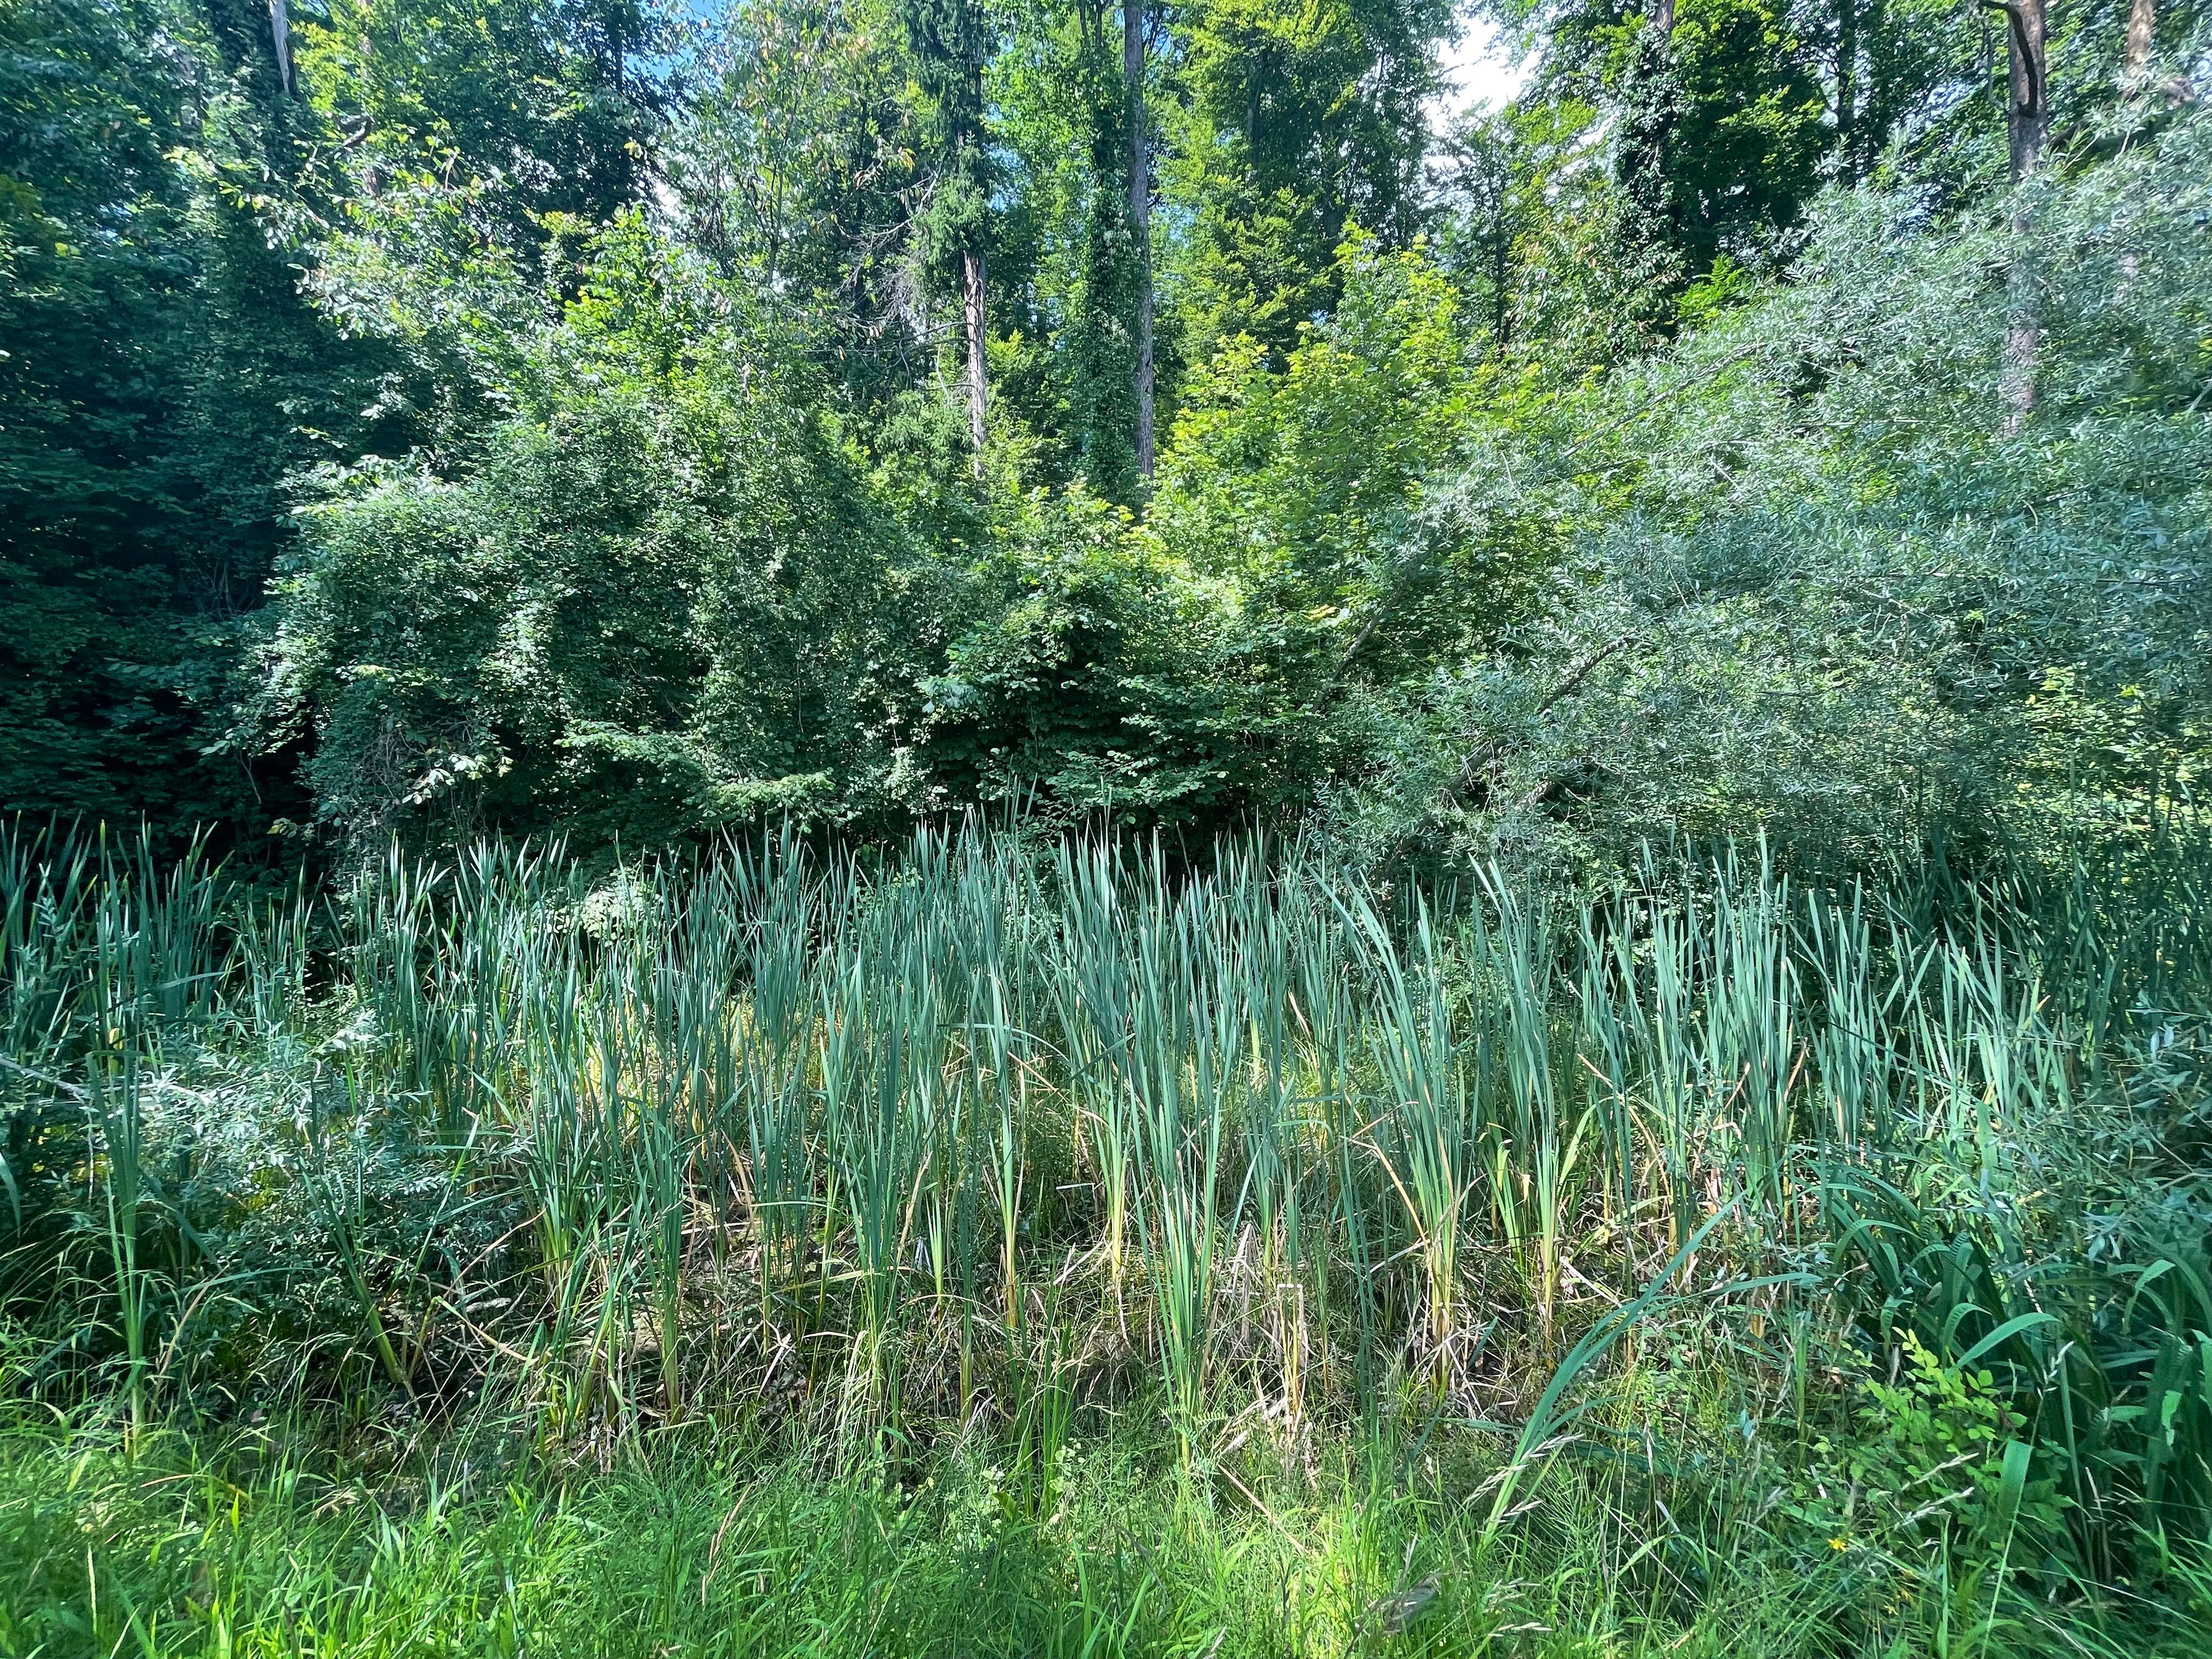 Die vielfältige Vegetation um den Teich bildet einen schönen Kontrast zu den höhen Bäumen.